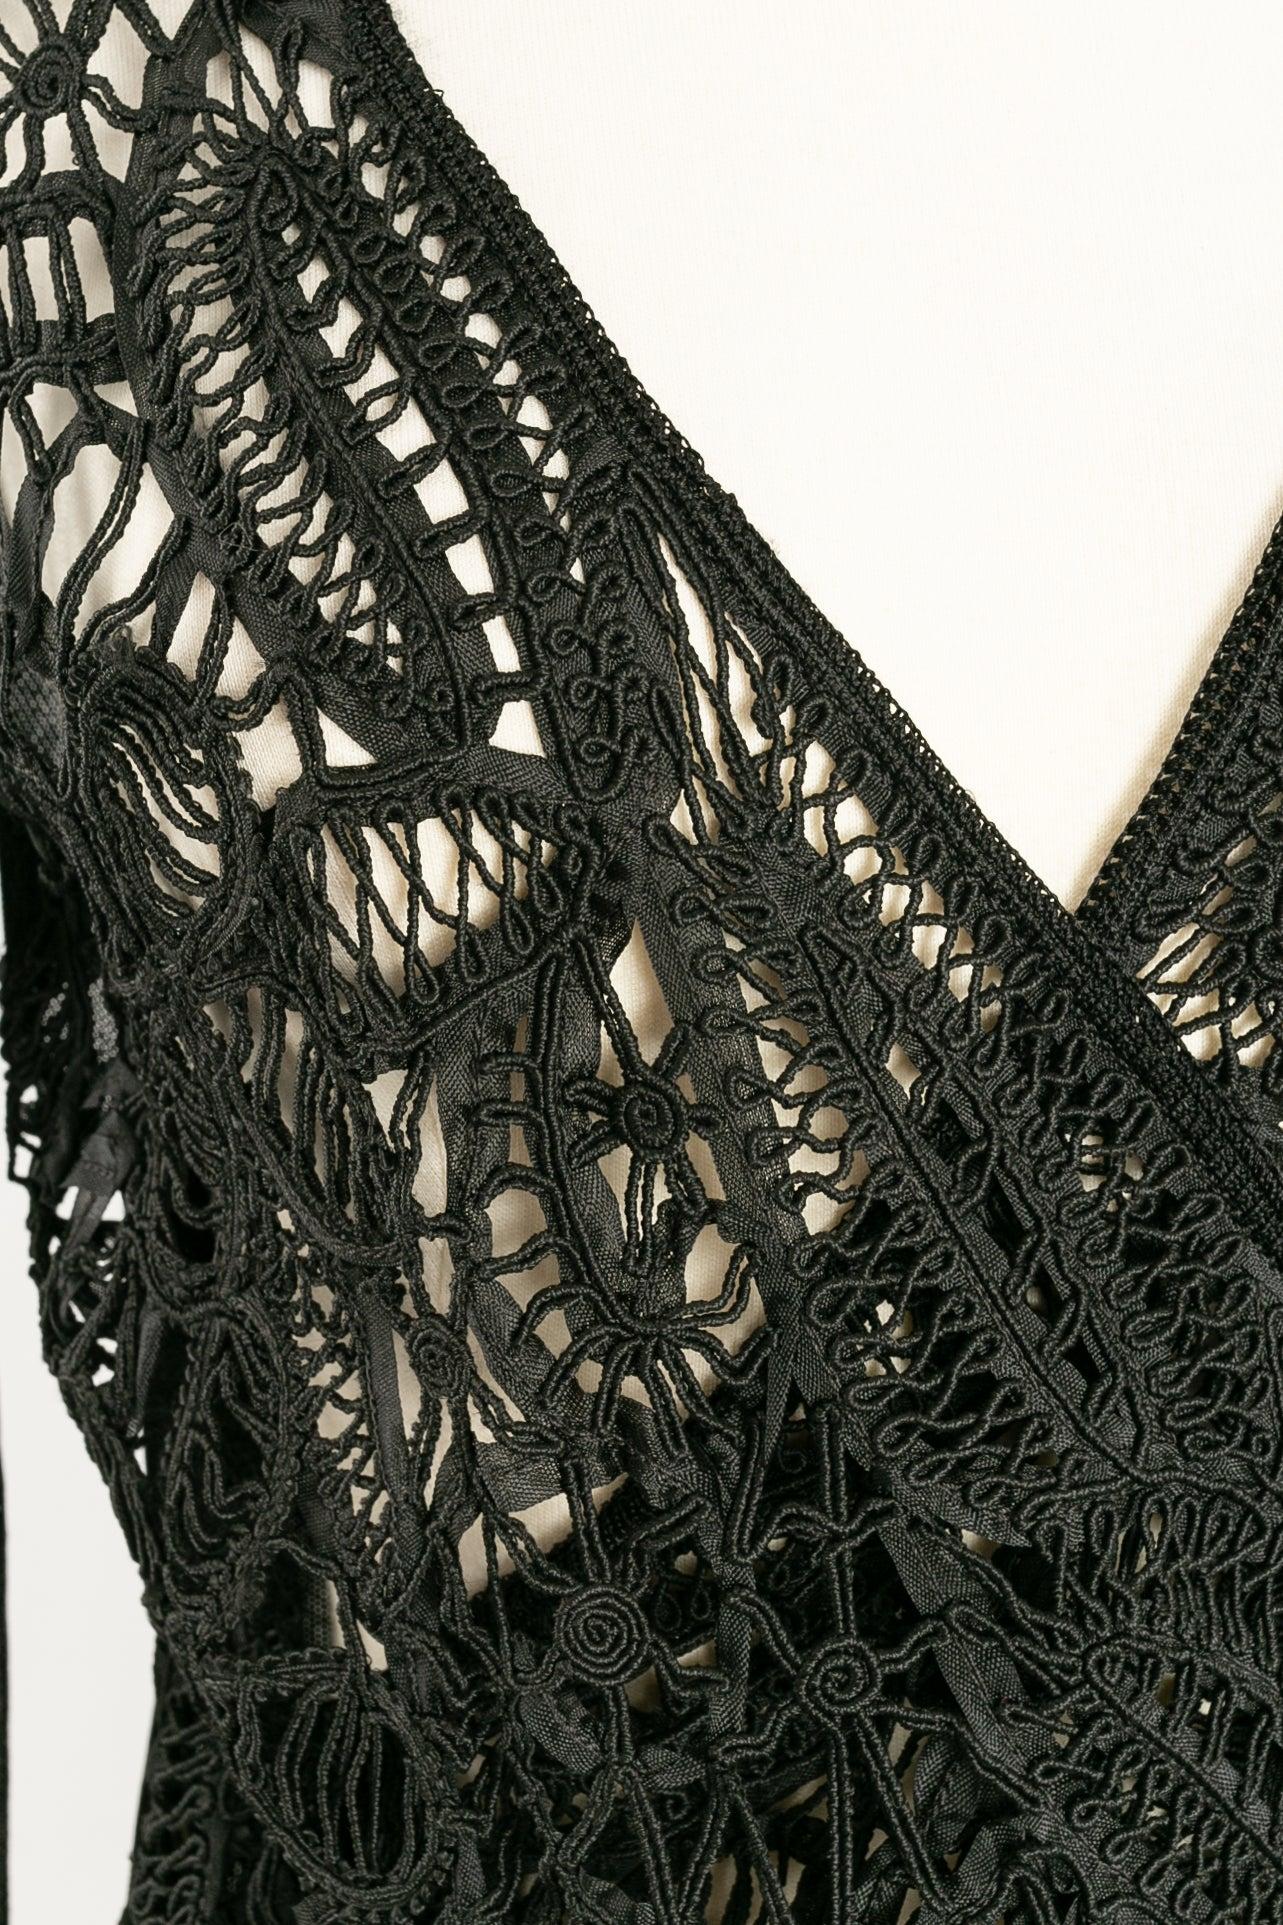 John Galliano Knit Wrap Top in Lace-Like Crochet For Sale 3